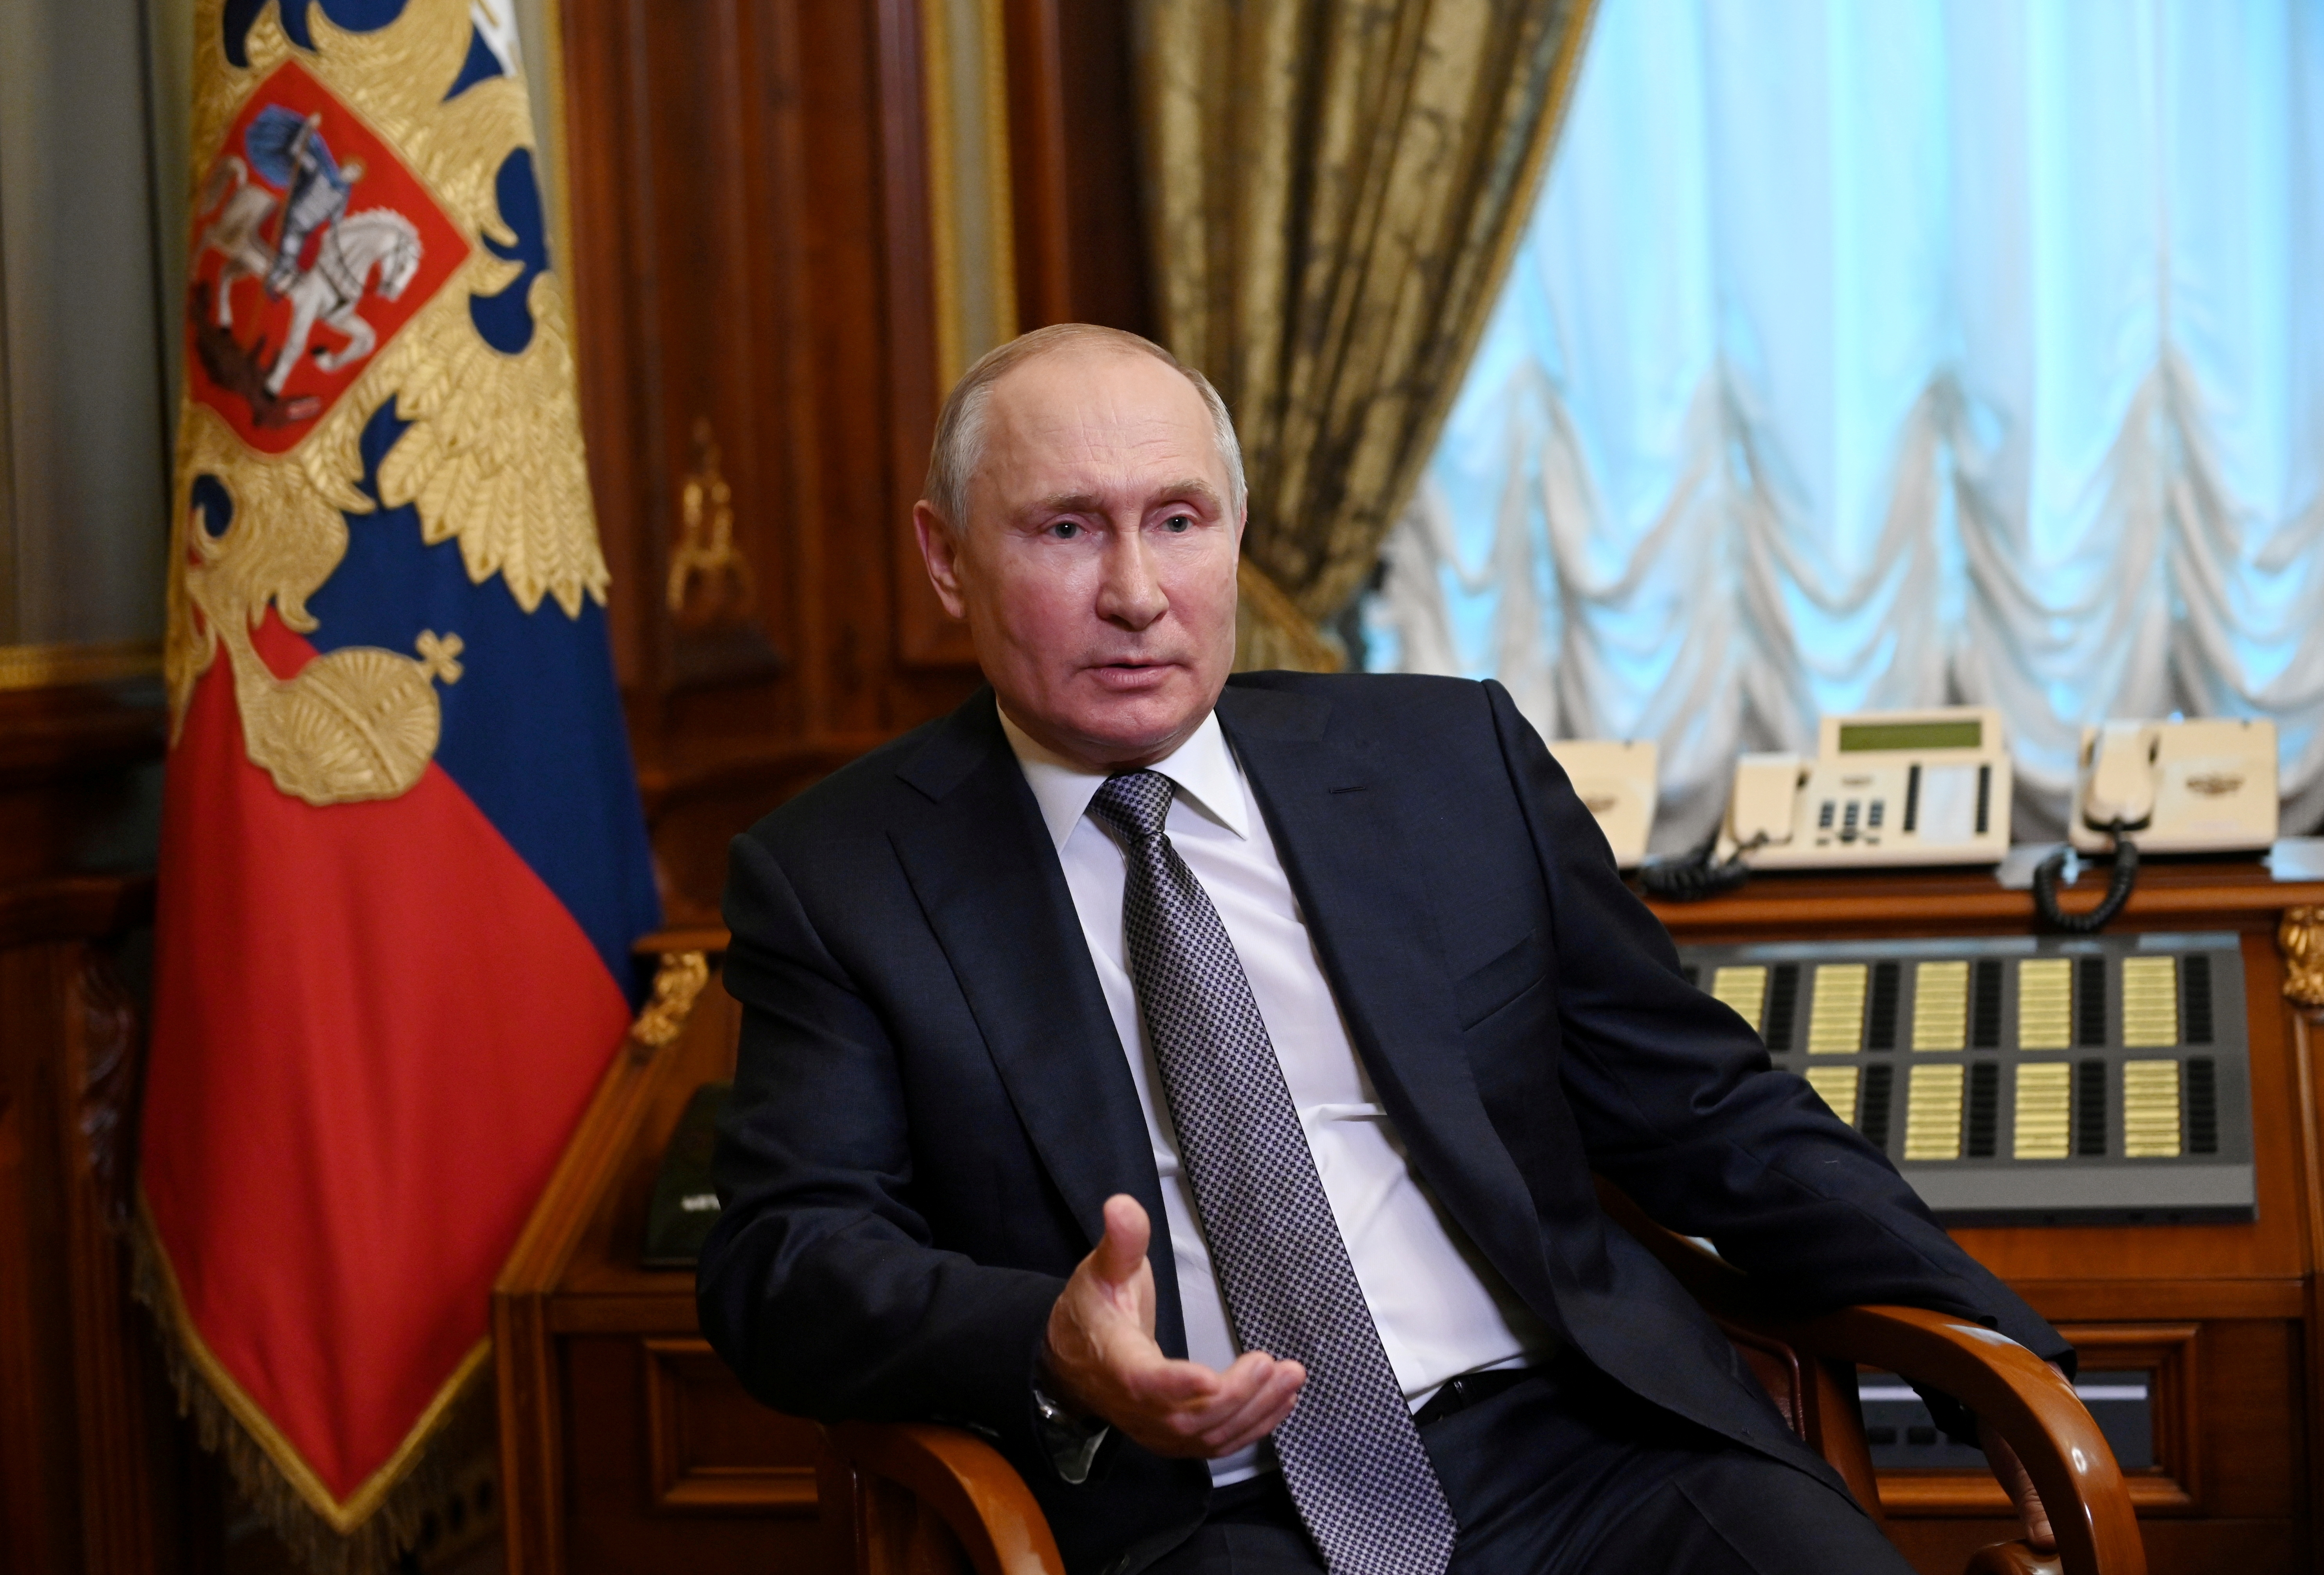 El encuentro entre ambos mandatarios duró unos 75 minutos. Sputnik/Alexei Nikolskyi/Kremlin via REUTERS 